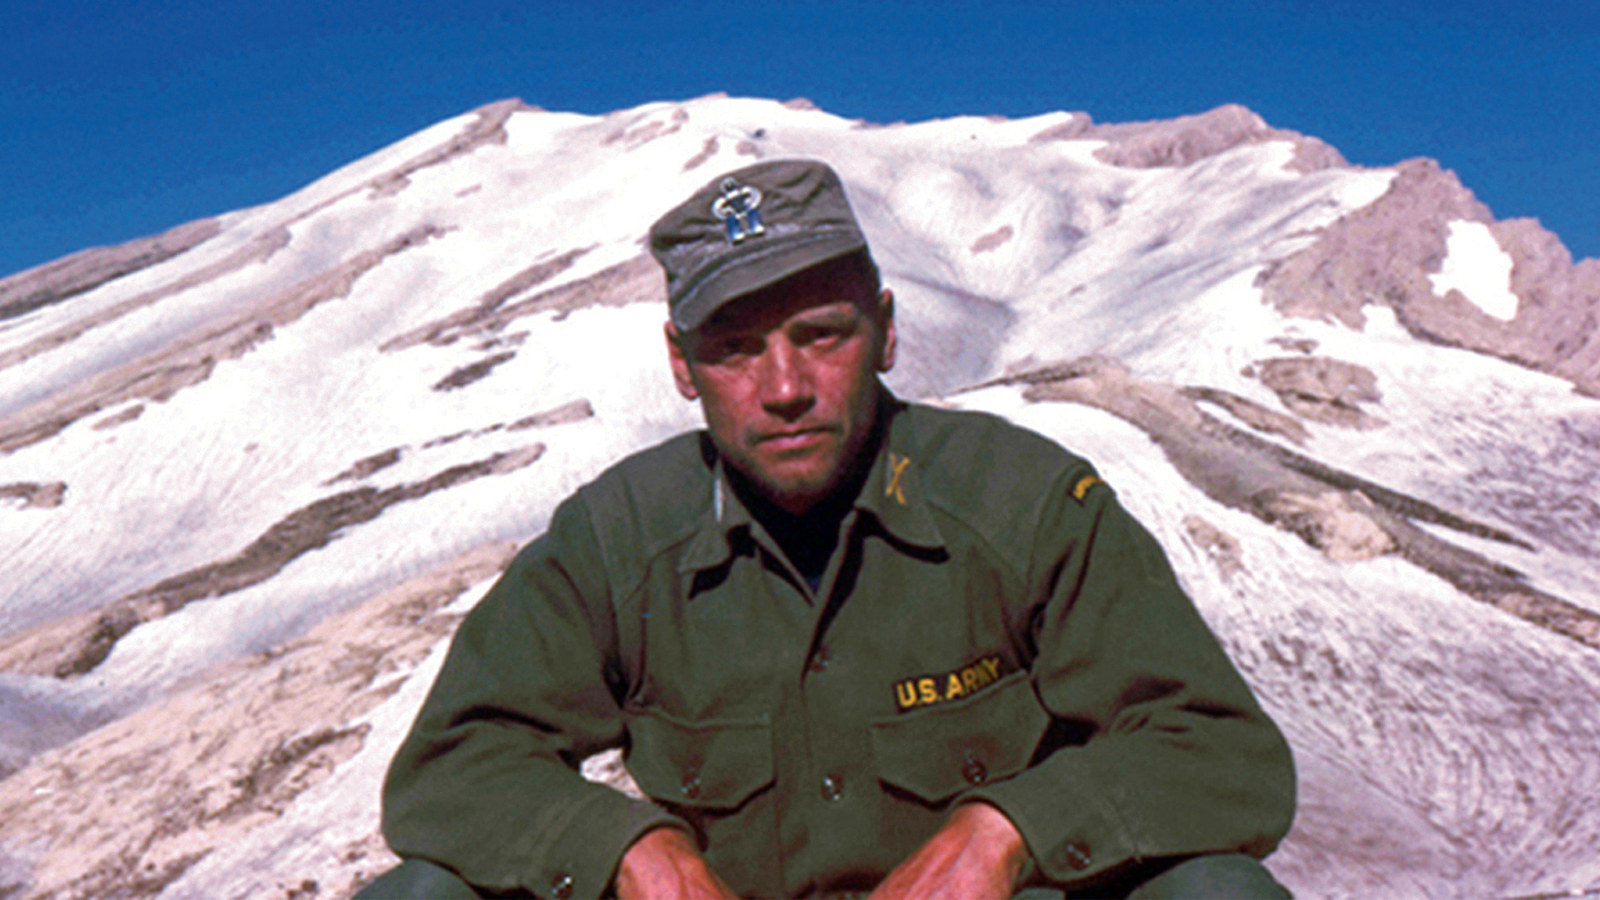 Kuvassa on noin 40-vuotias Lauri Törni eli Larry Thorne USA:n sotilaspuvussa. Kuva on otettu vuoristossa ja Törnistä on puolivartalokuva aurinkoisella ilmalla.